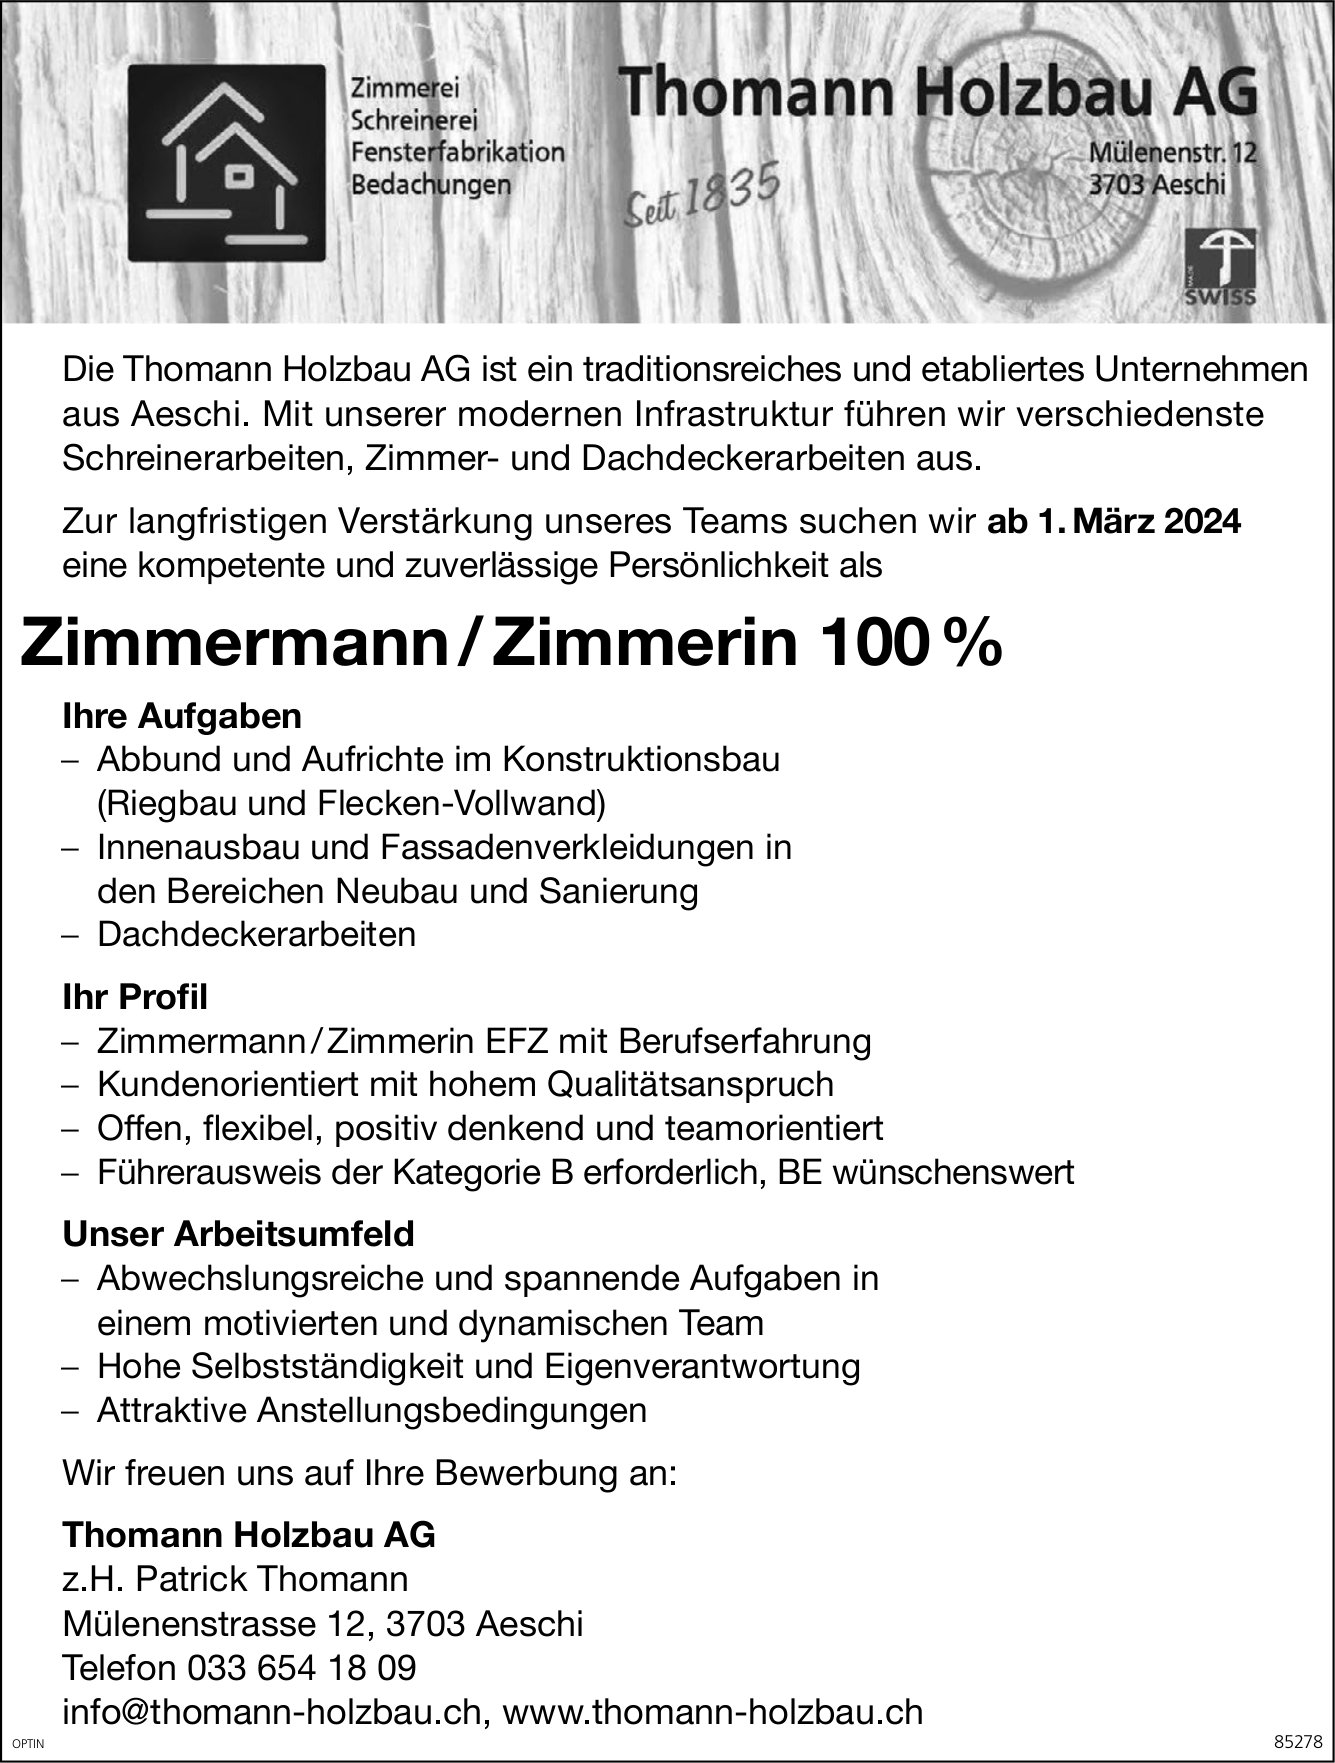 Zimmermann / Zimmerin 100 %, Thomann Holzbau AG, Aeschi, gesucht